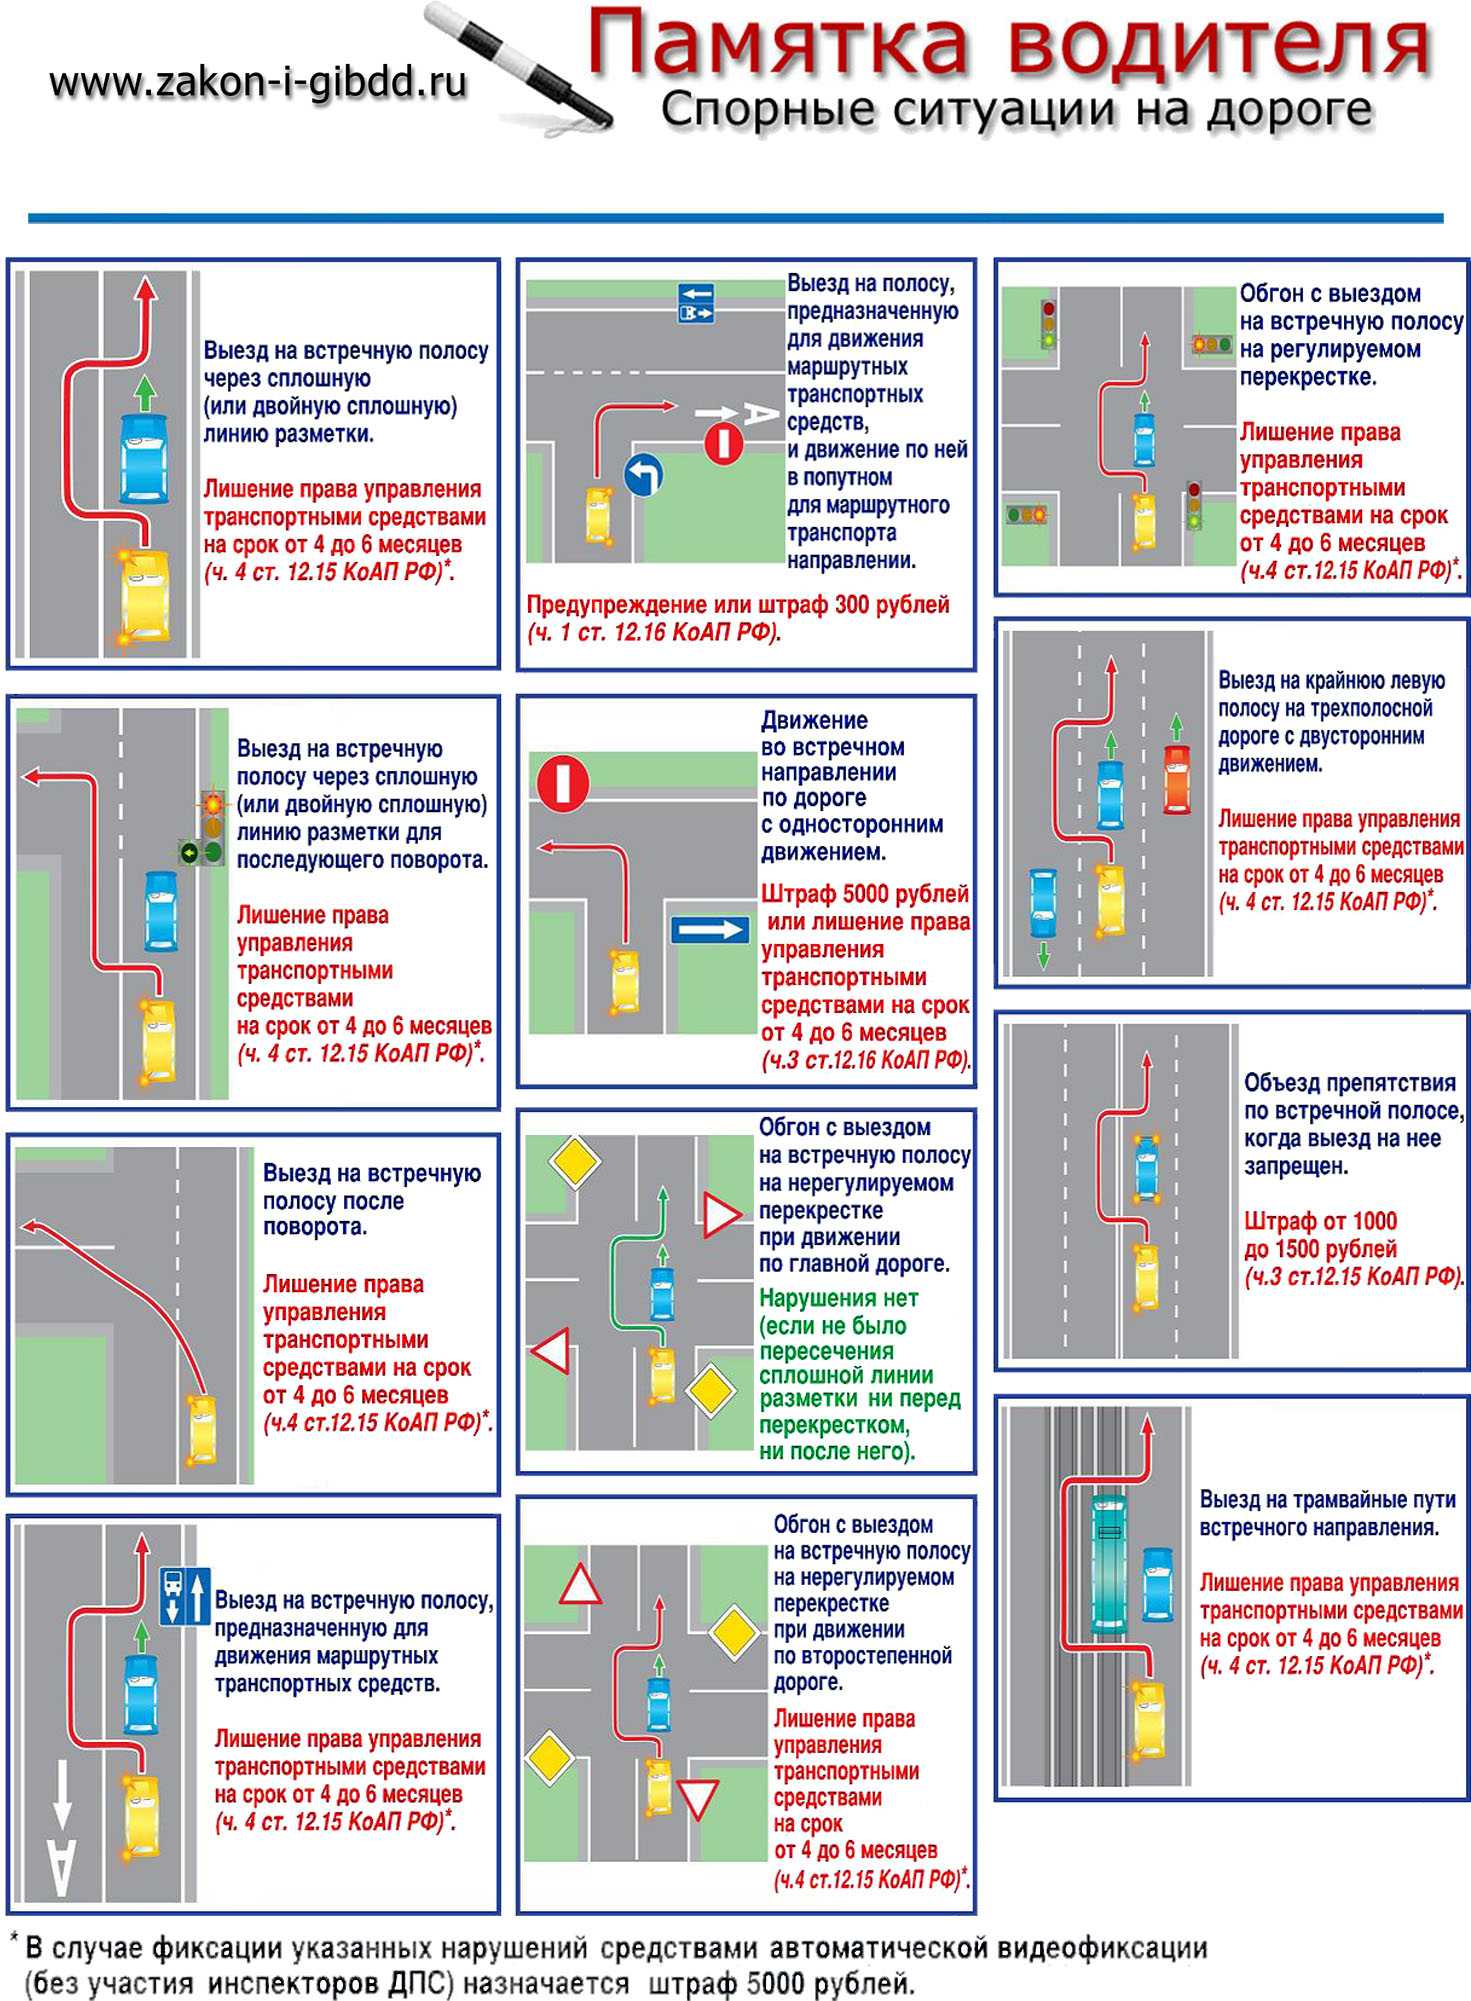 Какой размер штрафа предусмотрен за остановку тс на автобусной остановке? чем еще грозит нарушение правил парковки?